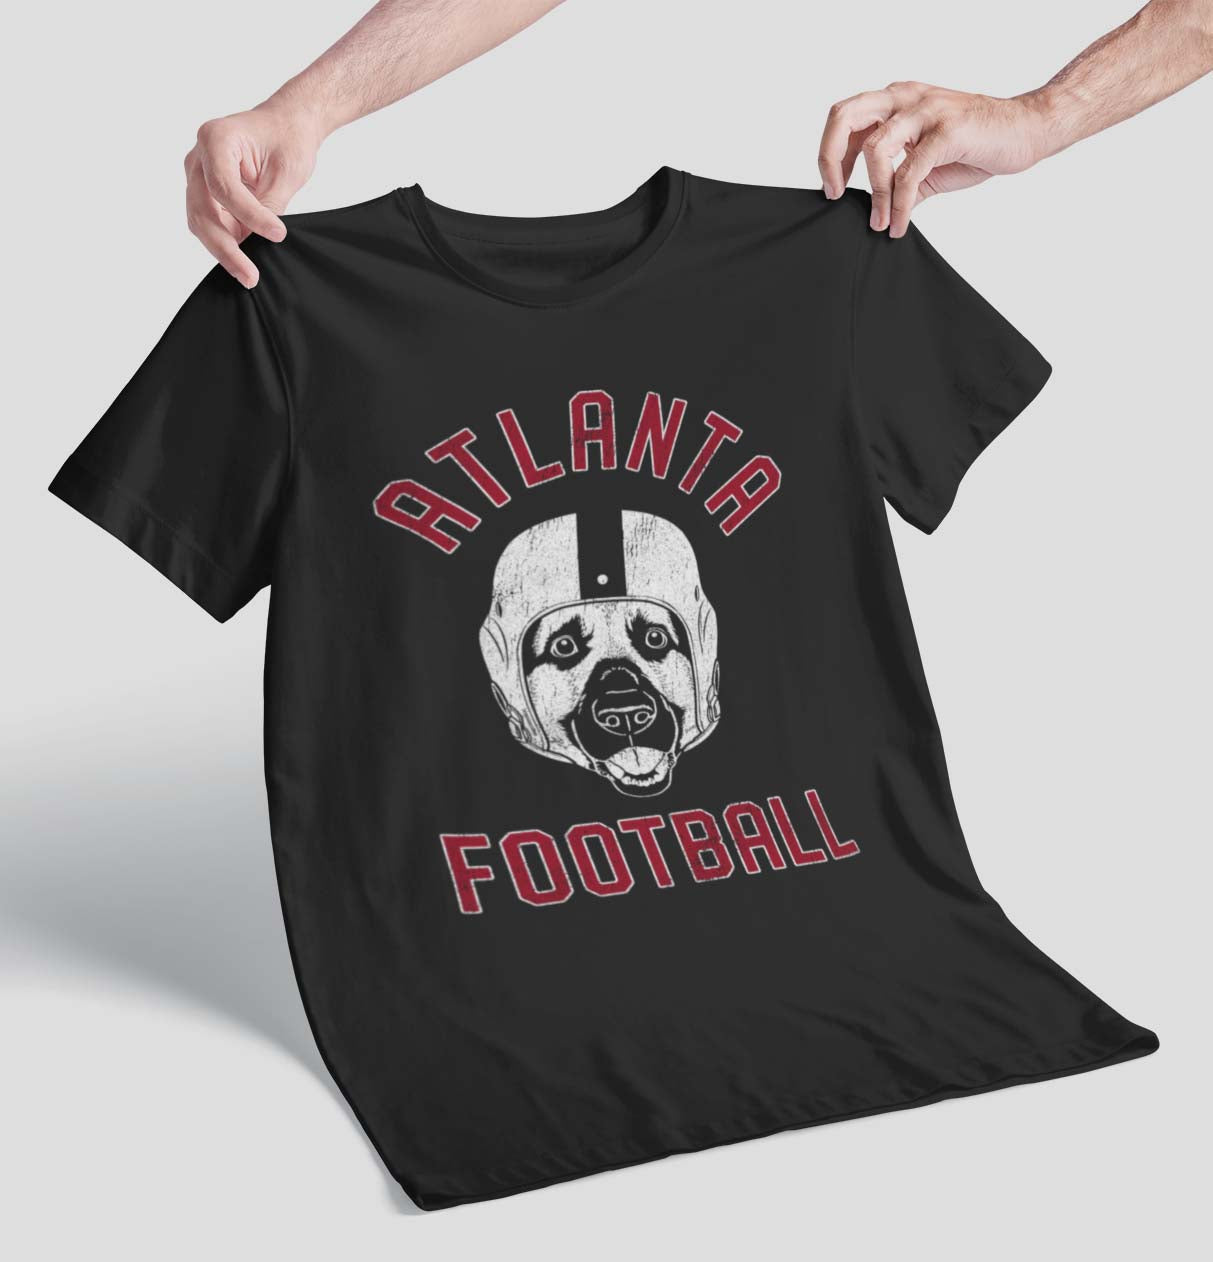 Atlanta Football German Shepherd T-Shirt